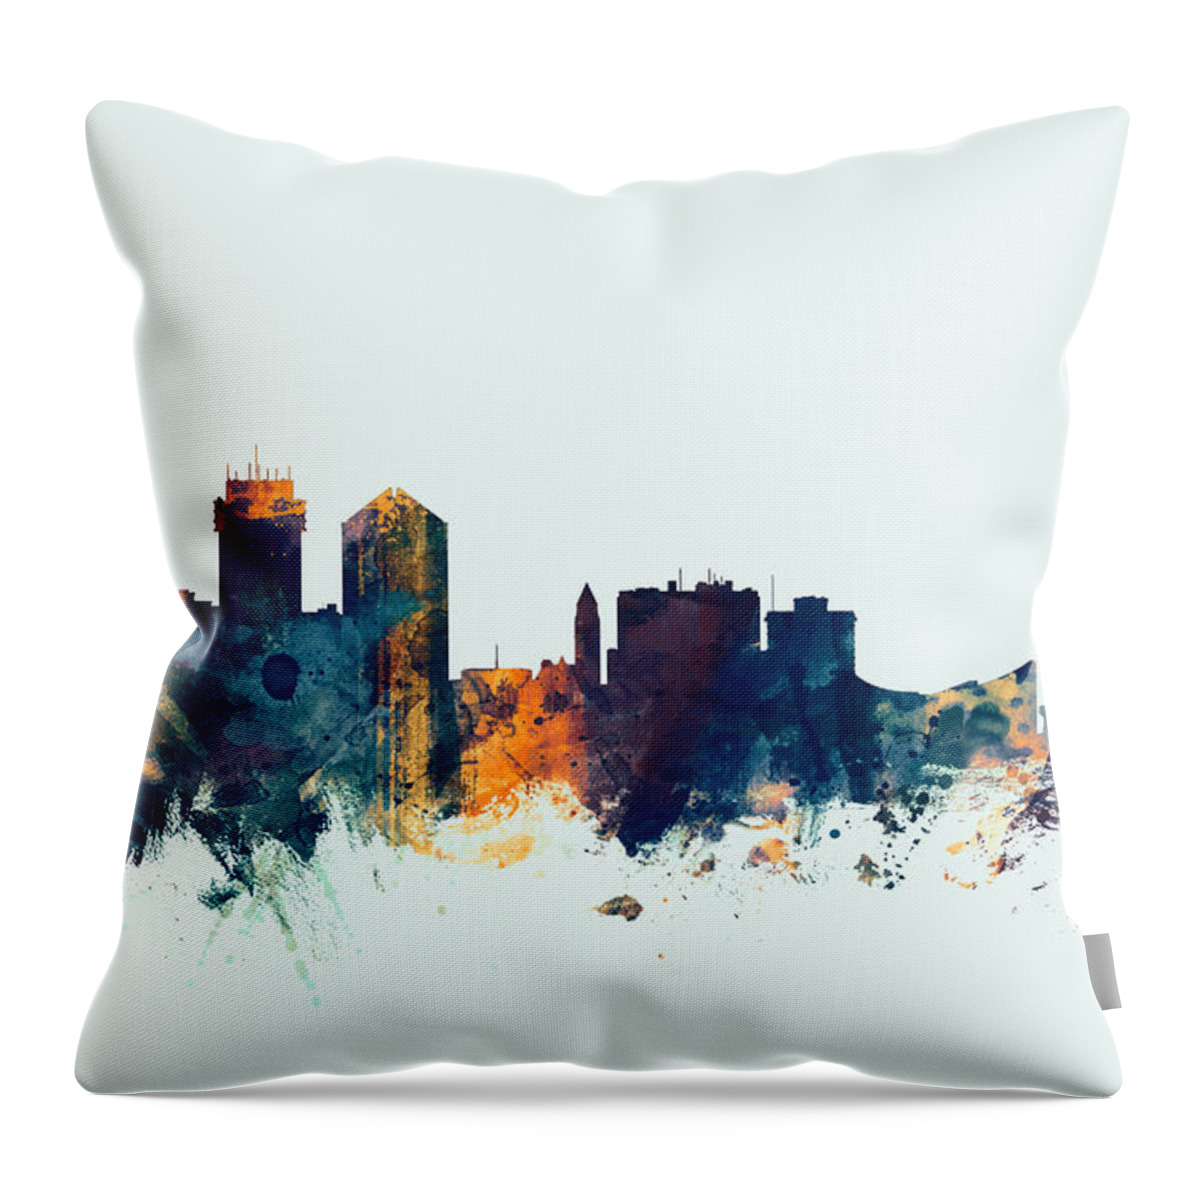 City Throw Pillow featuring the digital art Wichita Kansas Skyline #3 by Michael Tompsett